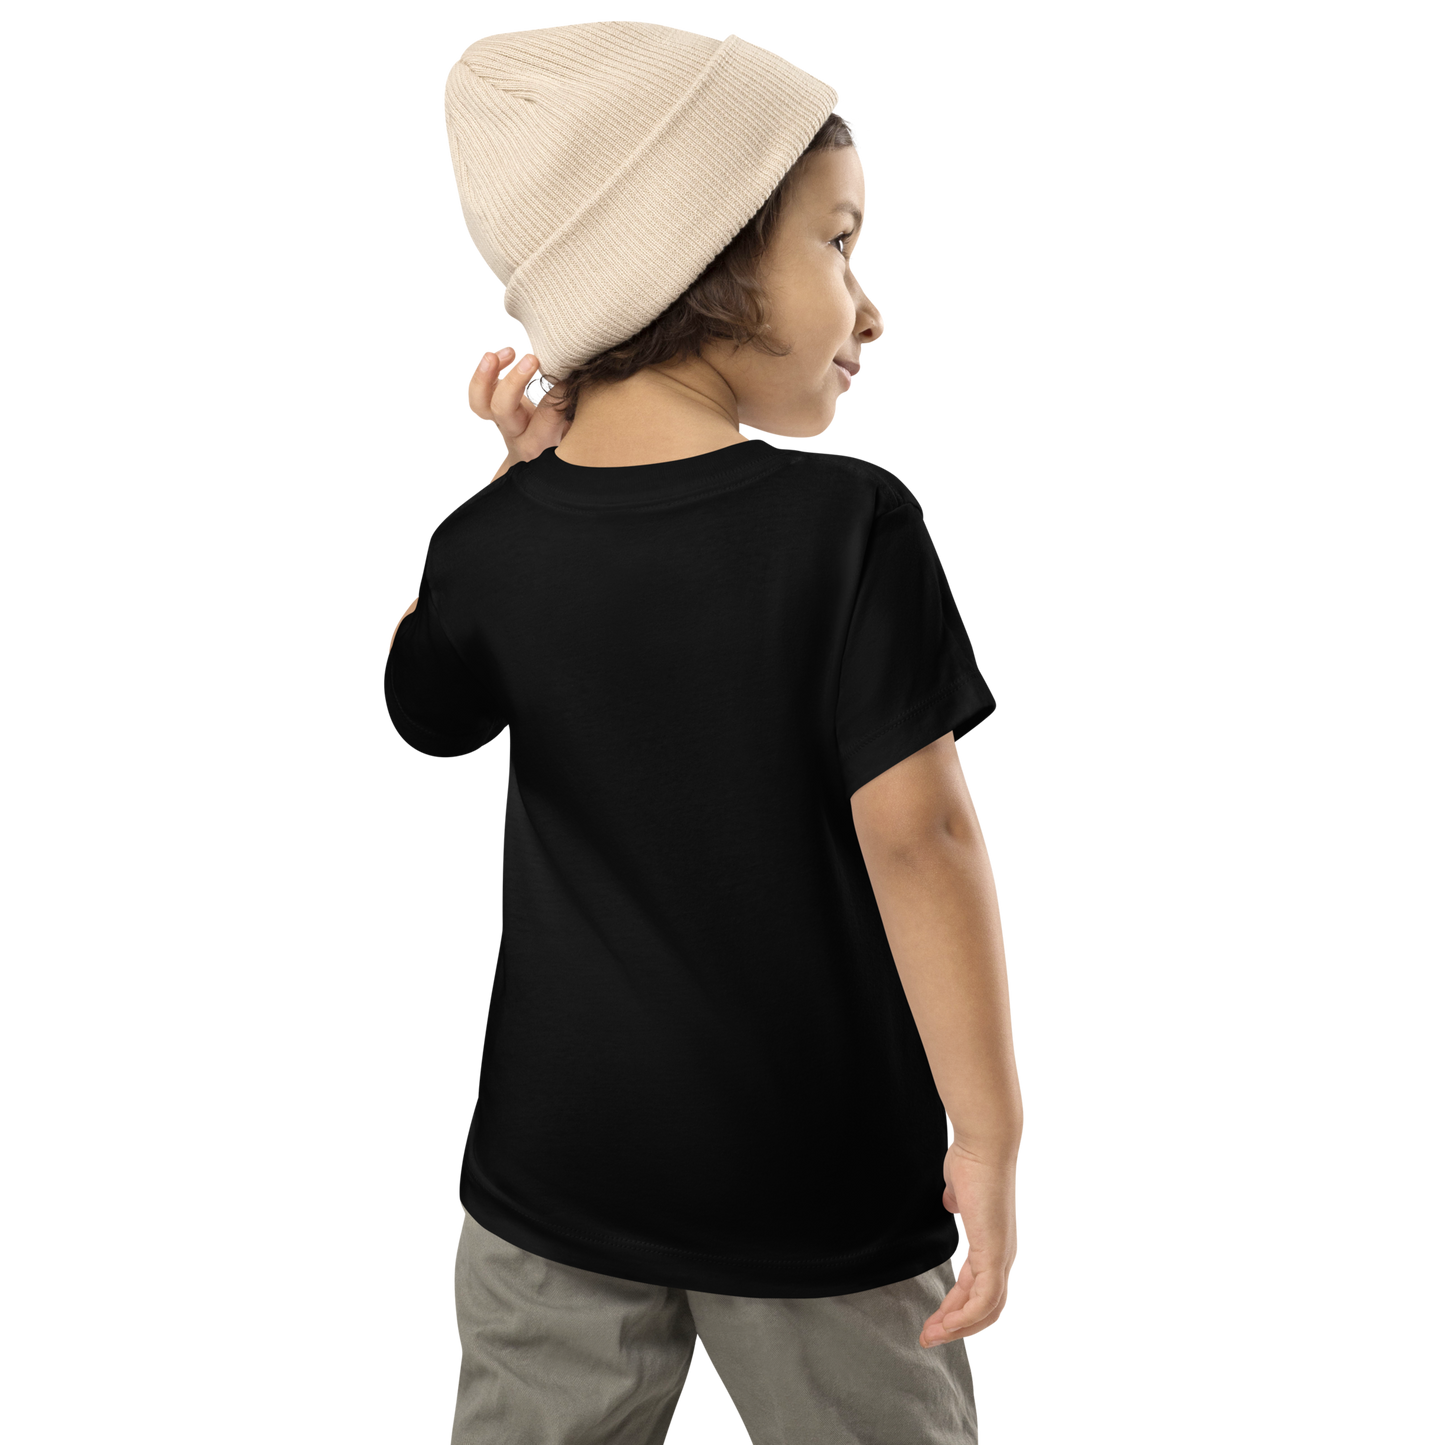 Infantil # CANEDO // Camiseta Esencial // Unisex